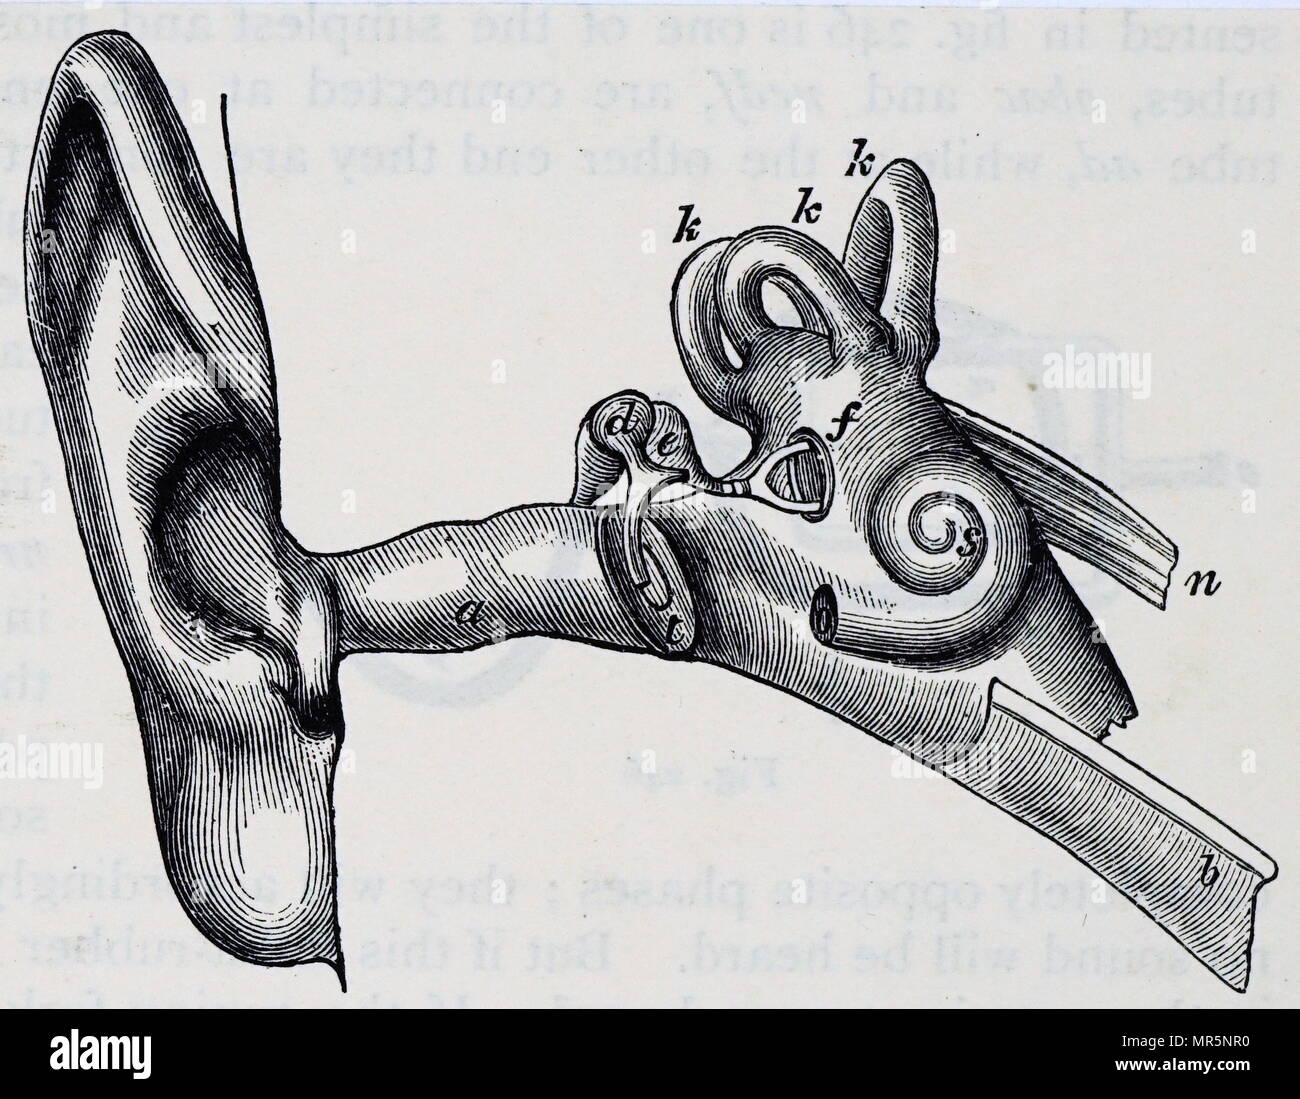 Diagramm des menschlichen Ohres. A: auditive Passage. T: Tympanon. D: Hammer. E: Amboss. F: steigbügel und mündliche Fenster. B: Eustachische Röhre. K: halbrunden Kanäle. S: Cochlea. Vom 20. Jahrhundert Stockfoto